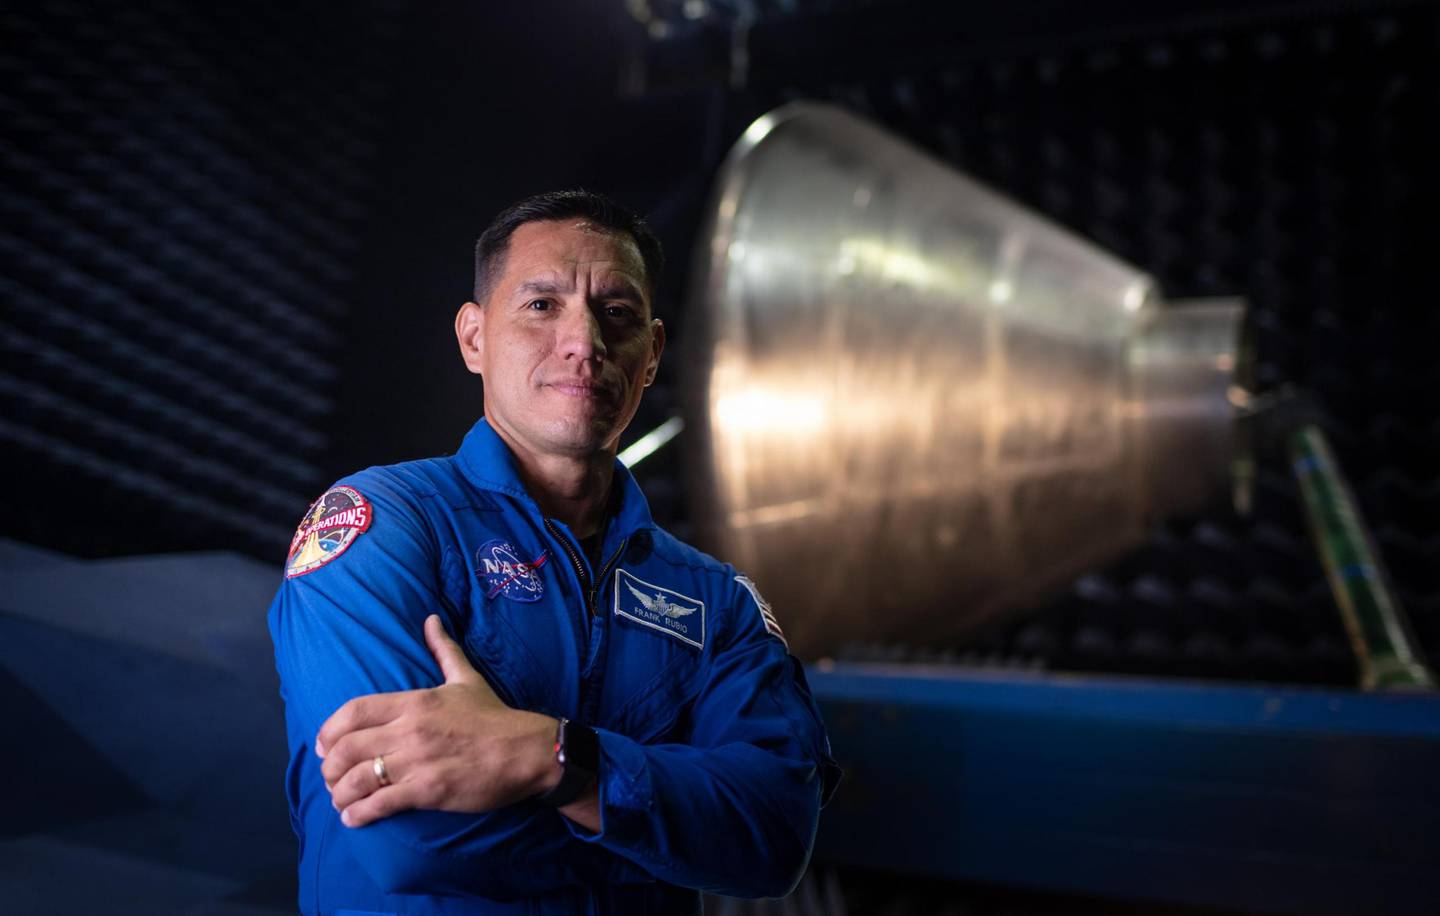 Hijo de salvadoreños, es uno de los 18 astronautas aspirantes a ir a la Luna con el Programa Artemis de la NASA.